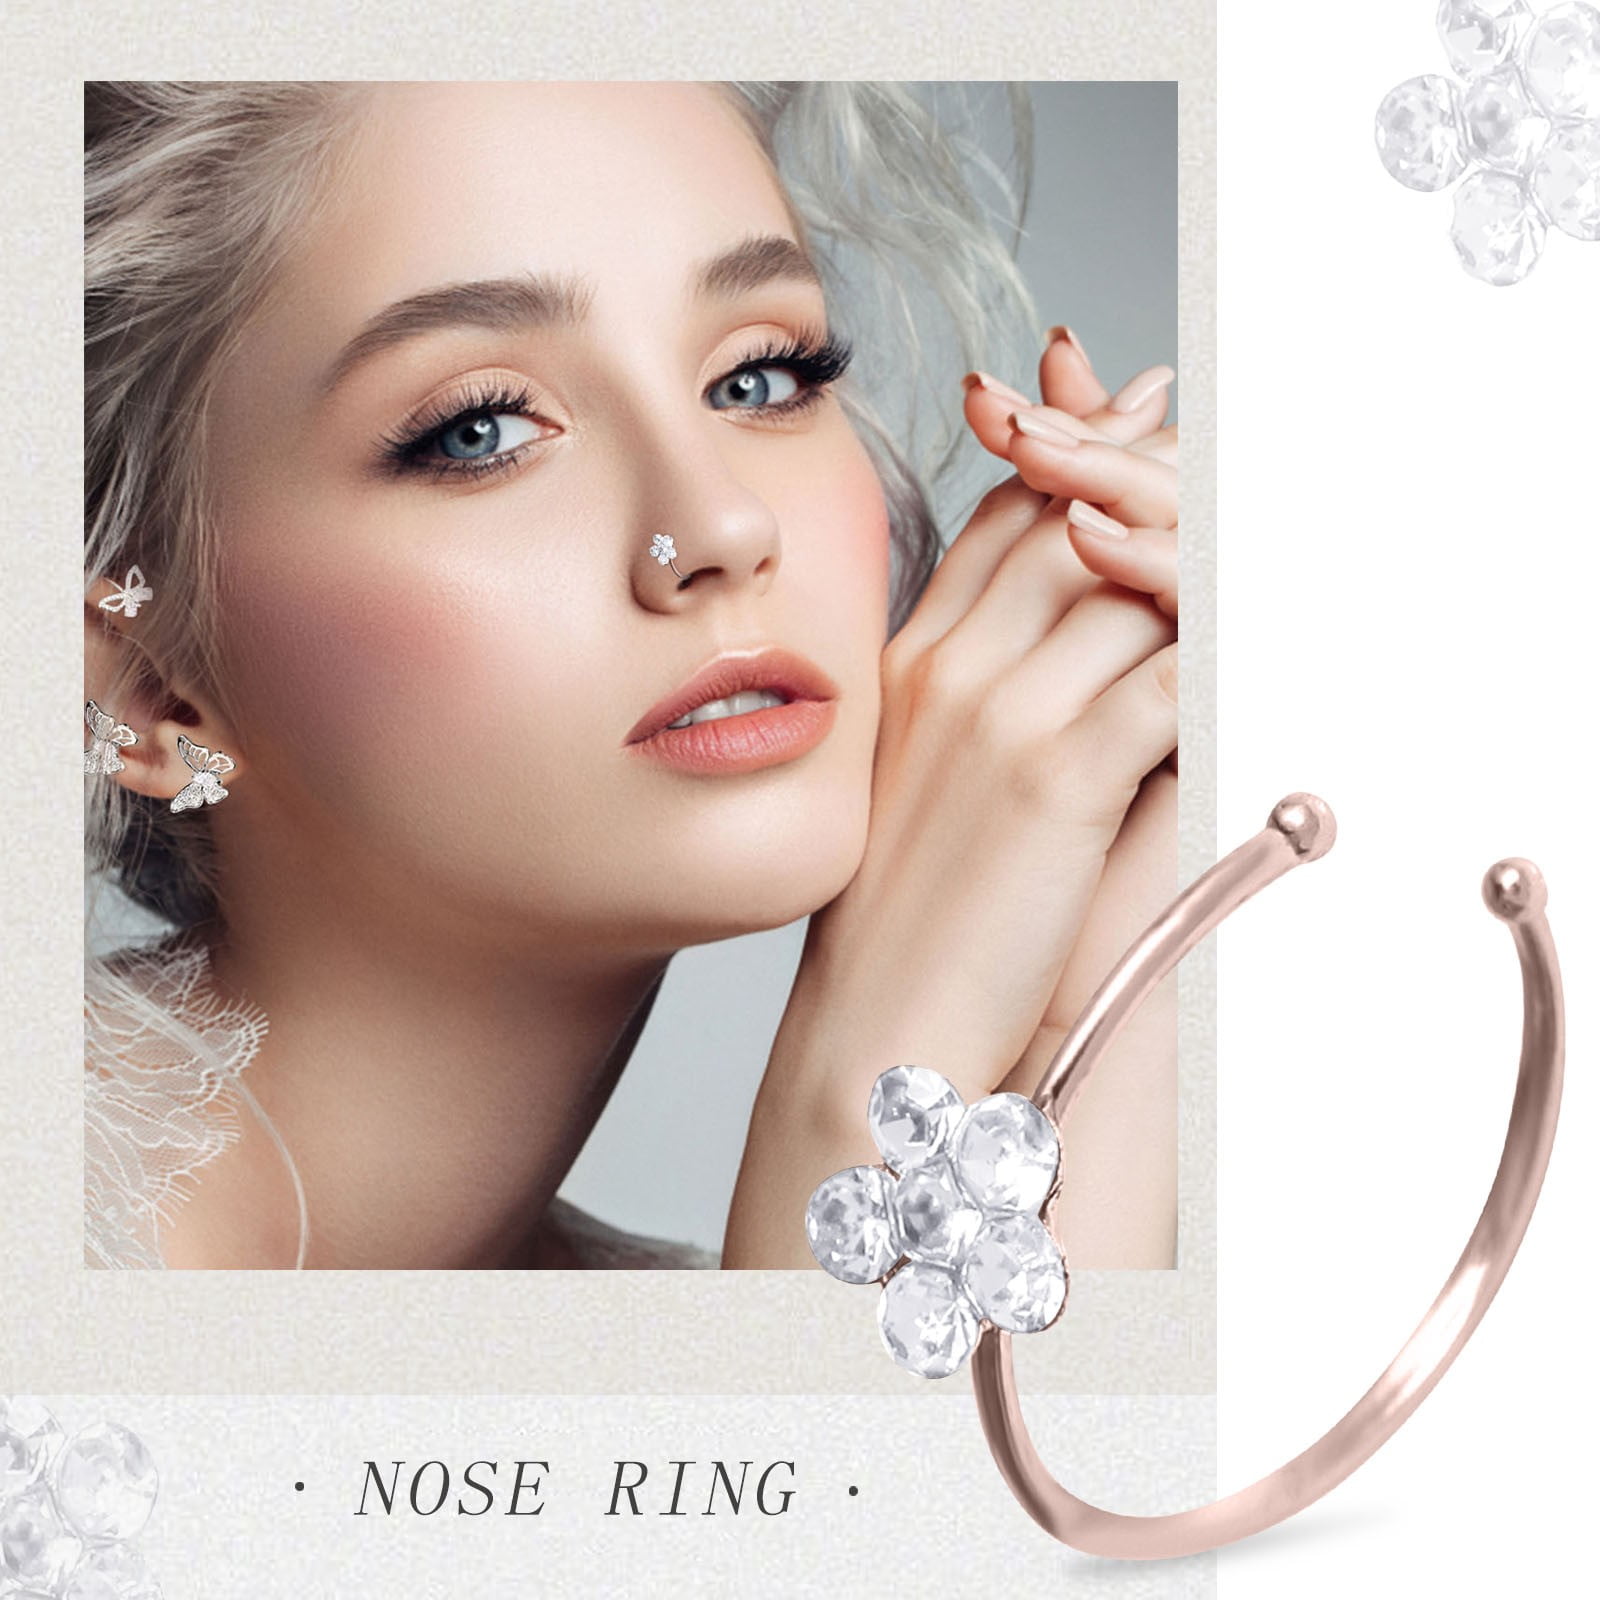 Nose Ring Hoop - Buy Nose Ring Hoop Online Starting at Just ₹66 | Meesho